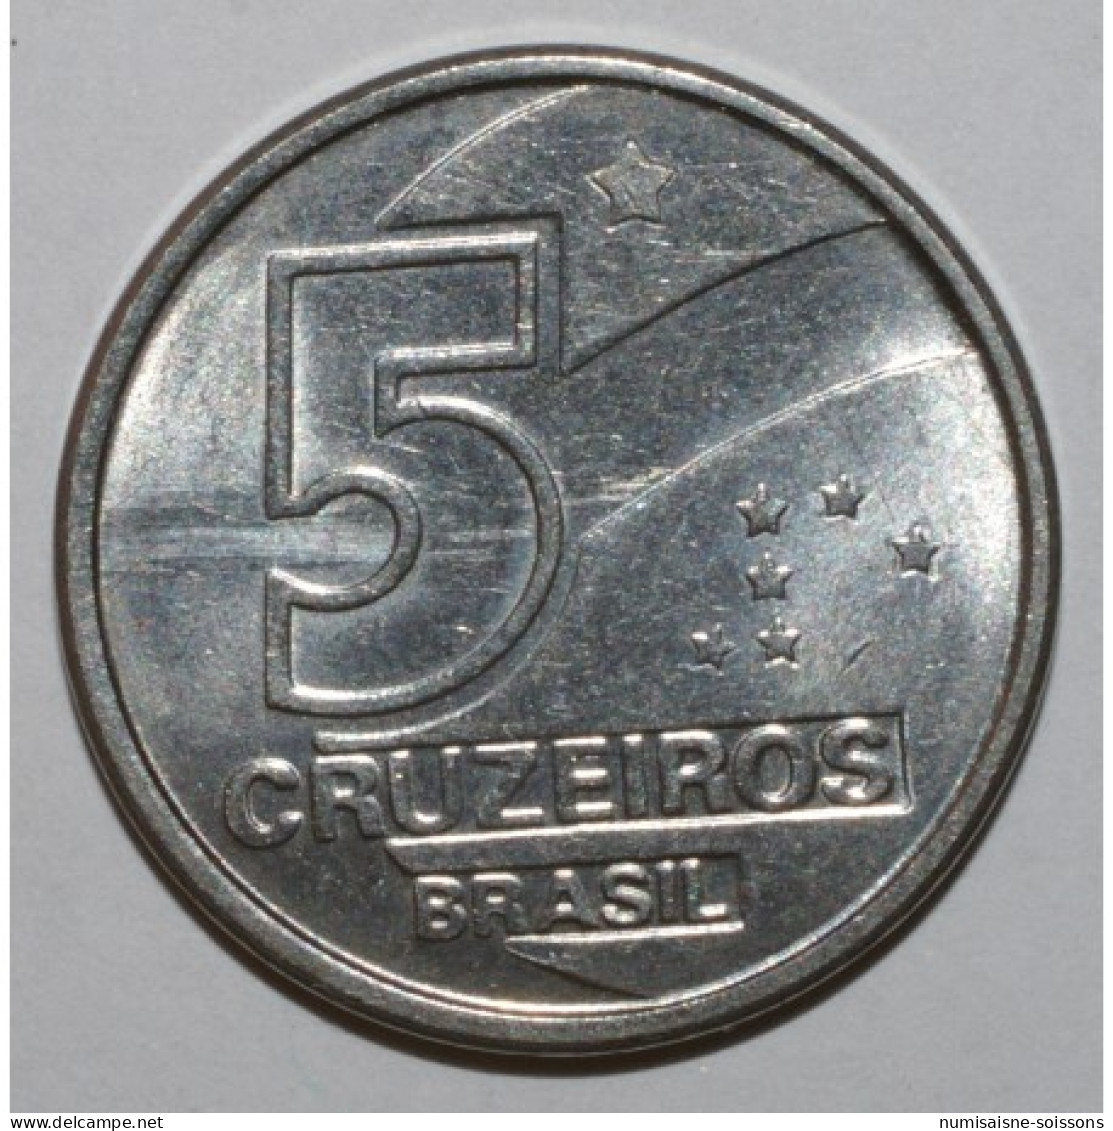 BRÉSIL - KM 618 - 5 CRUZEIROS 1991 - SPL - Brazil